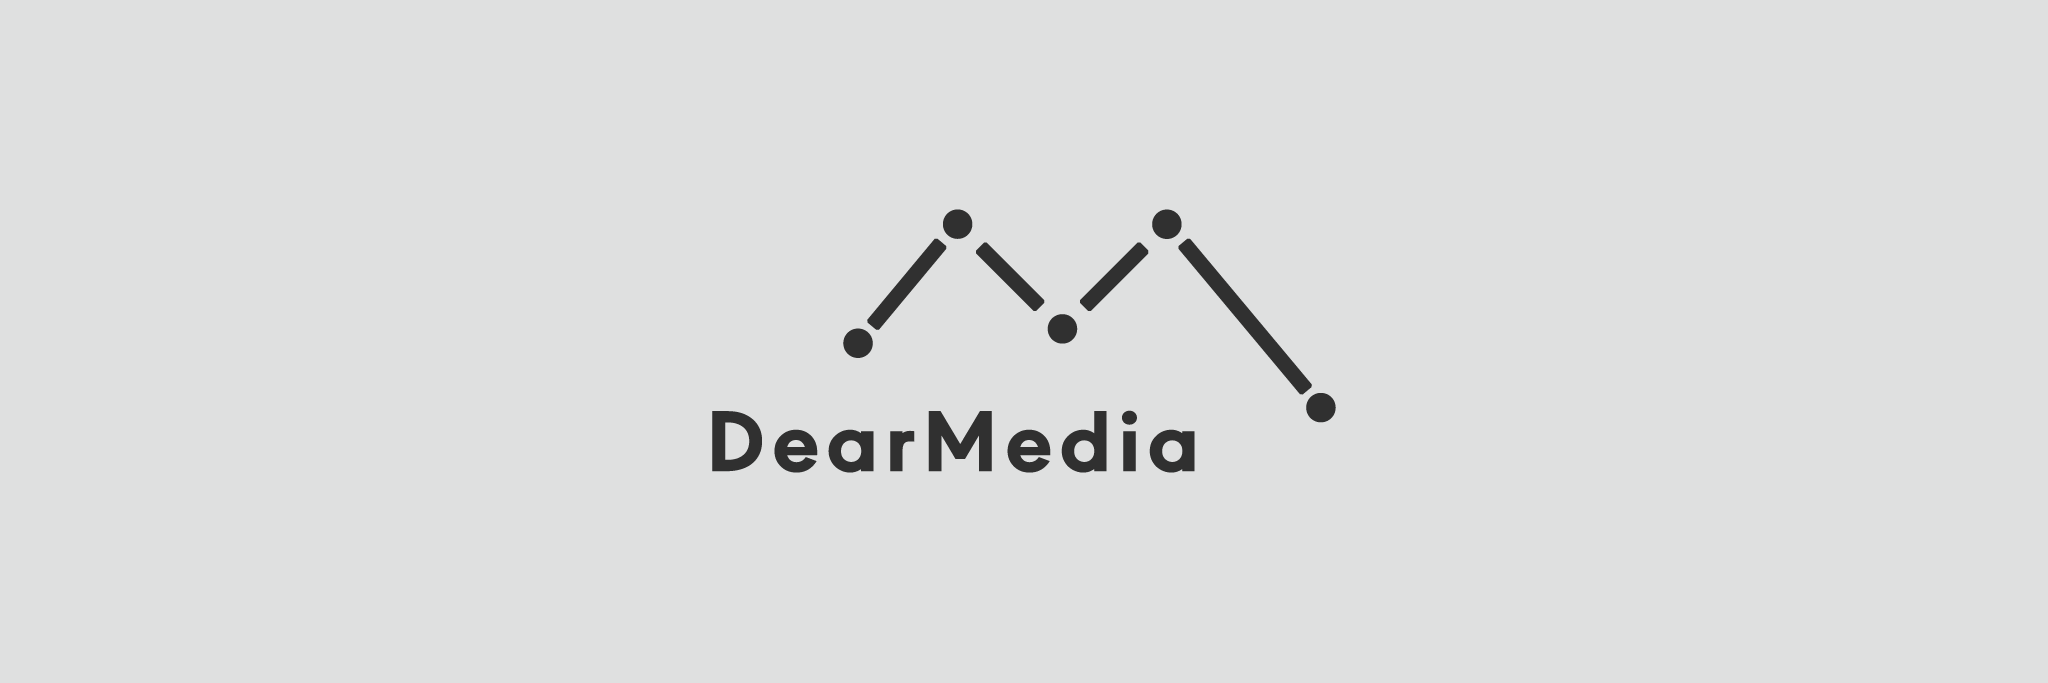 Dear Media Logo